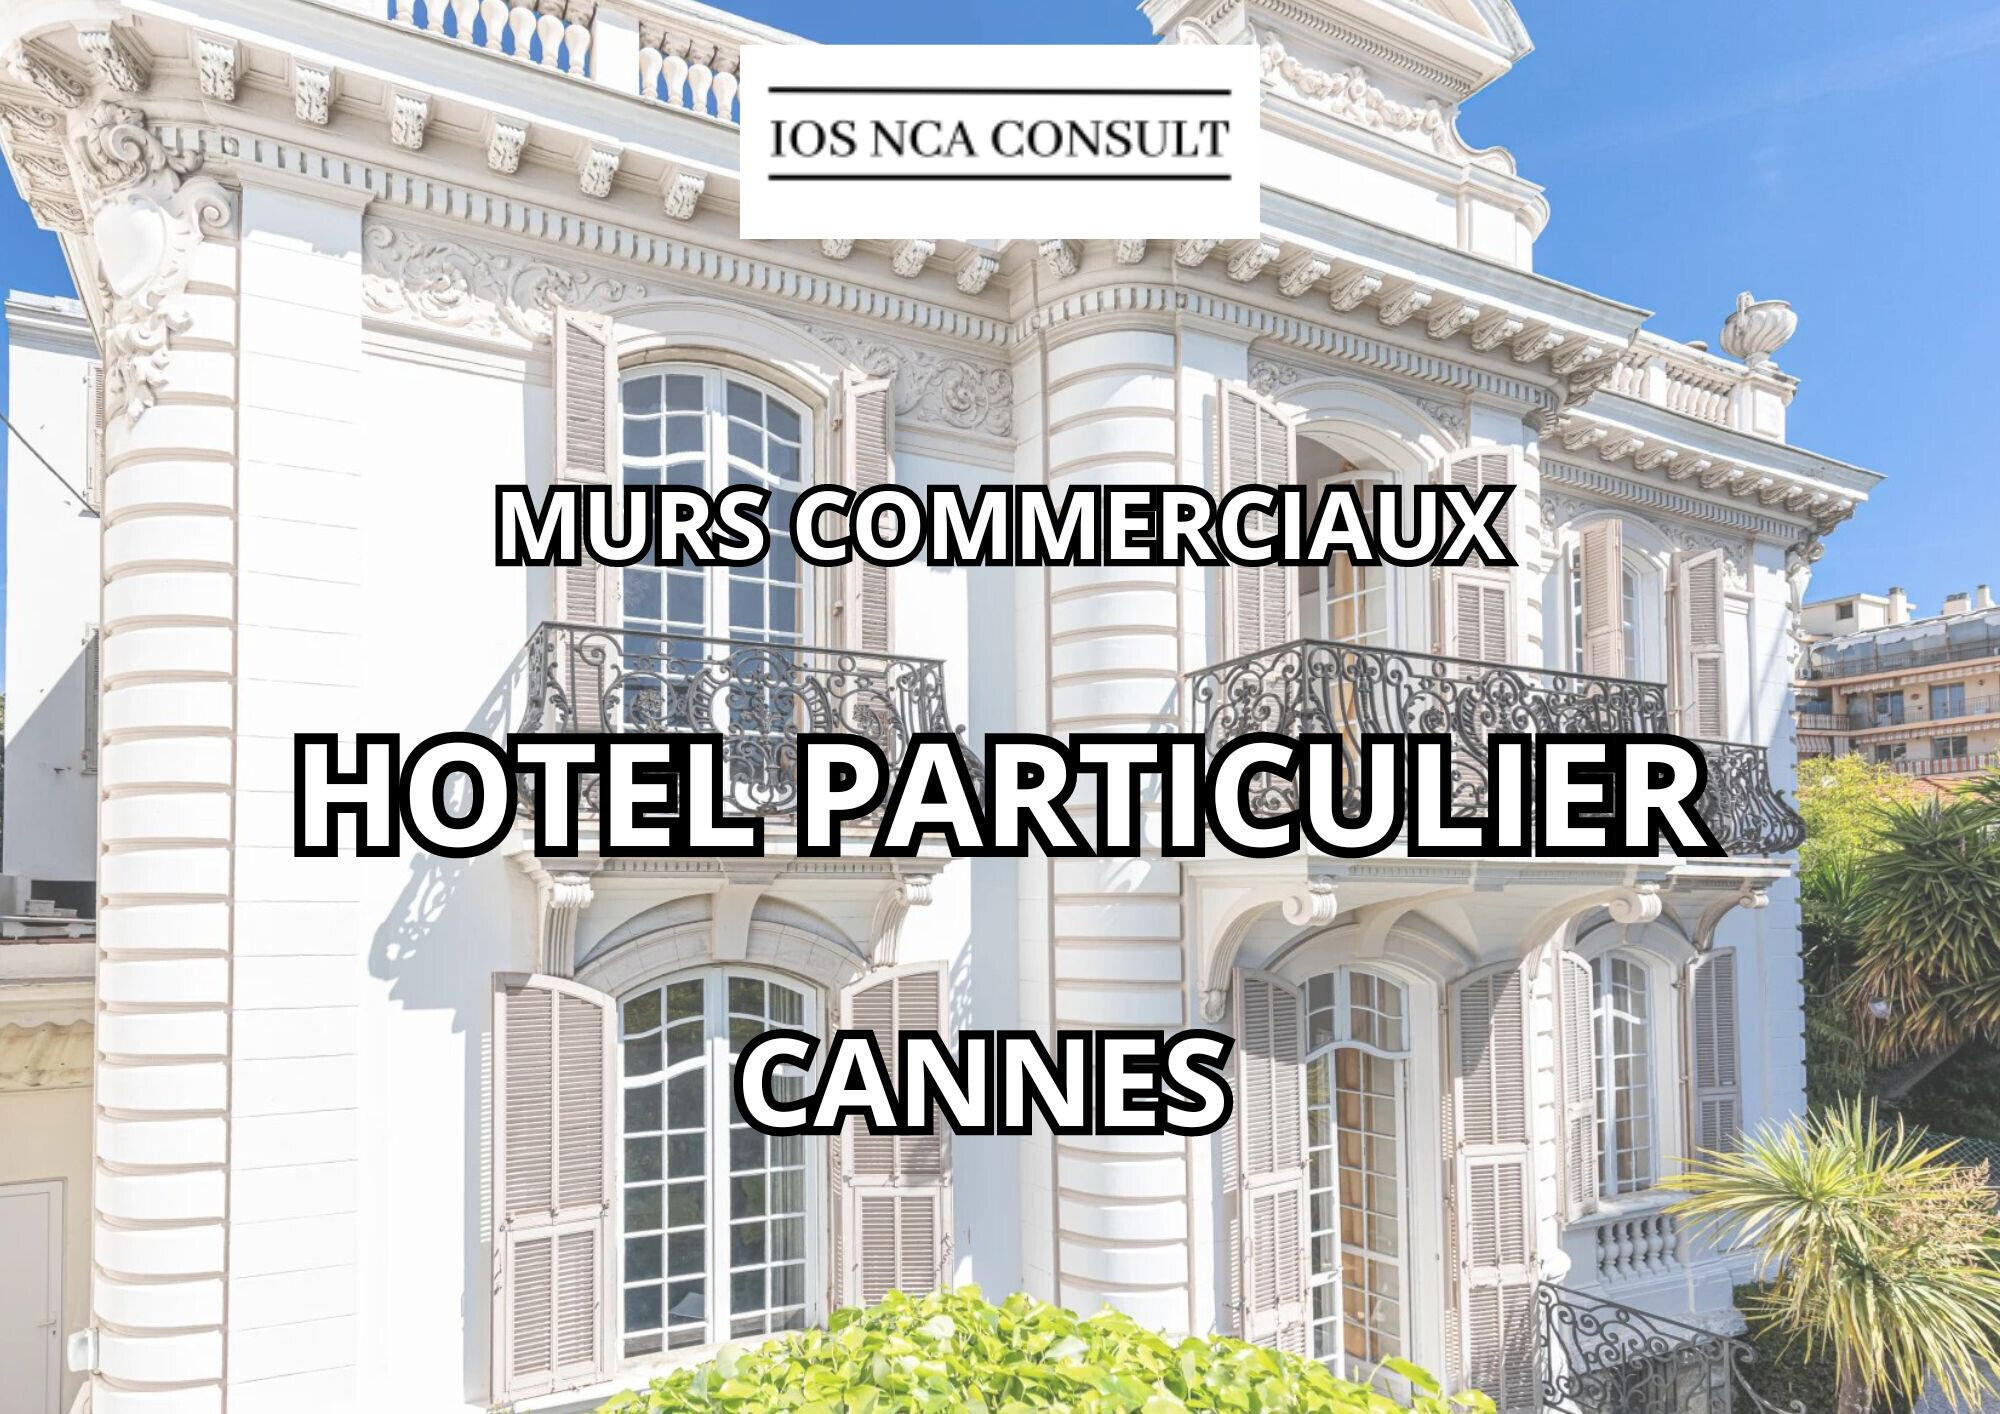 Vente hôtel particulier 500m² vue mer à Cannes